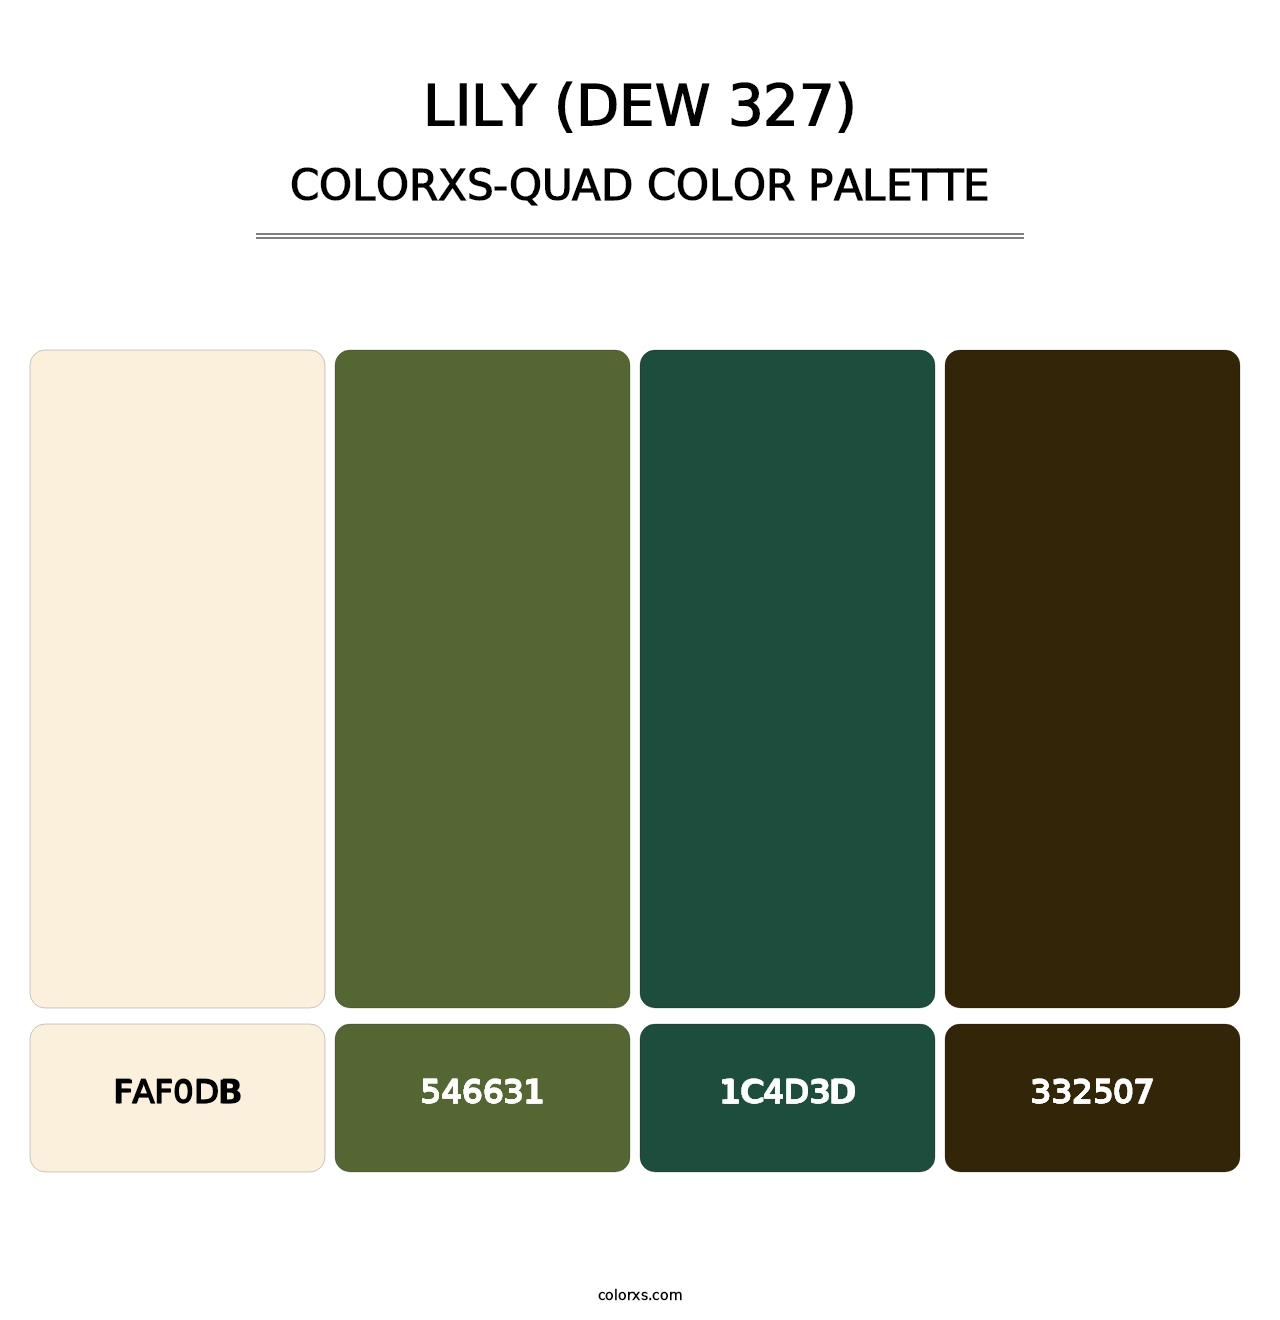 Lily (DEW 327) - Colorxs Quad Palette